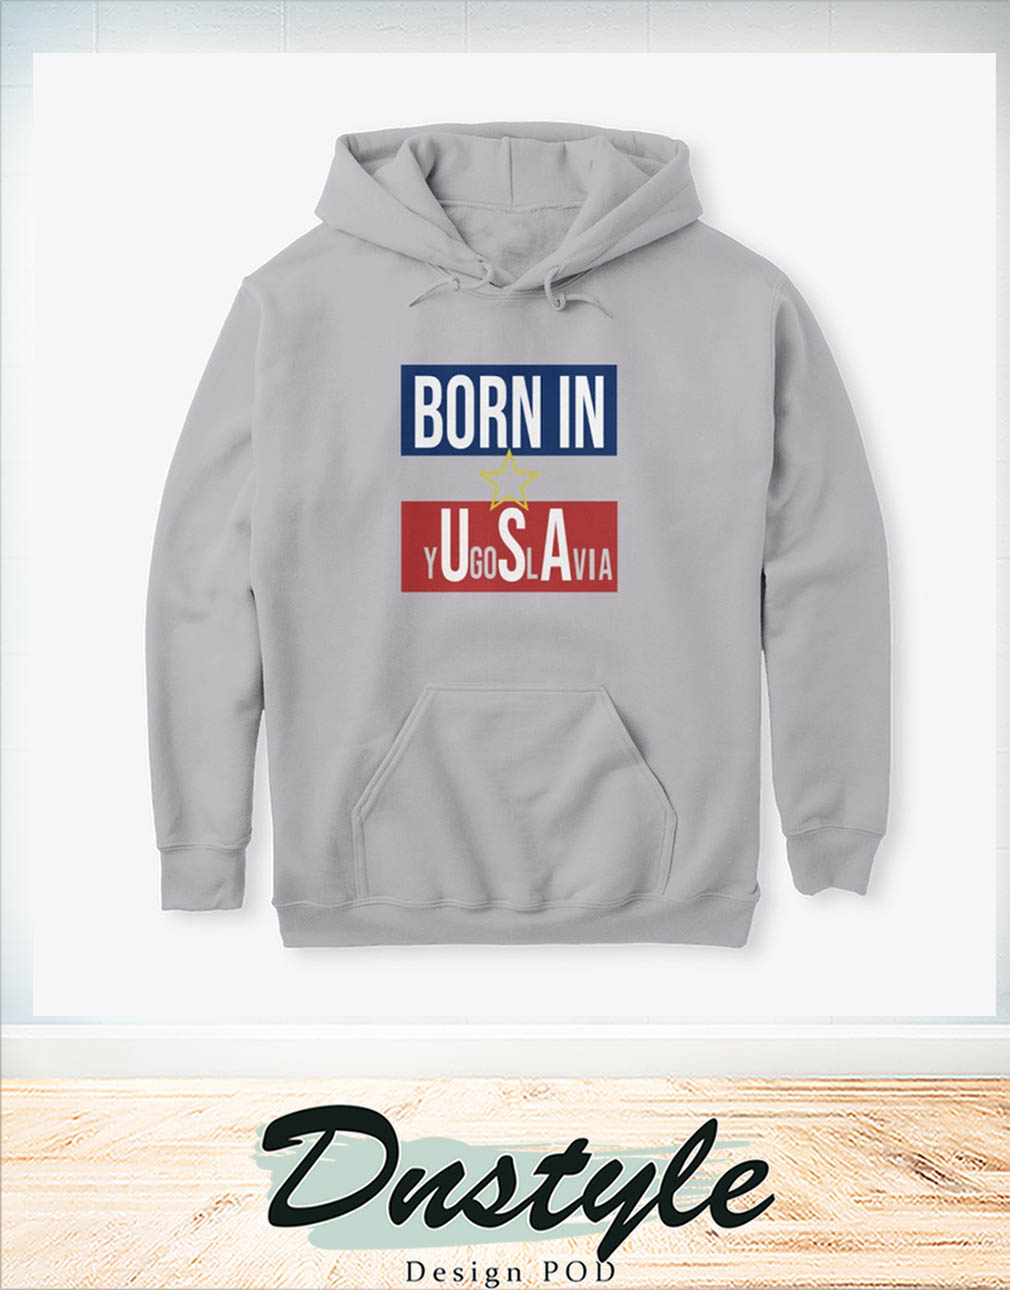 Born in YU-GI-OH-SLAVIA hoodie